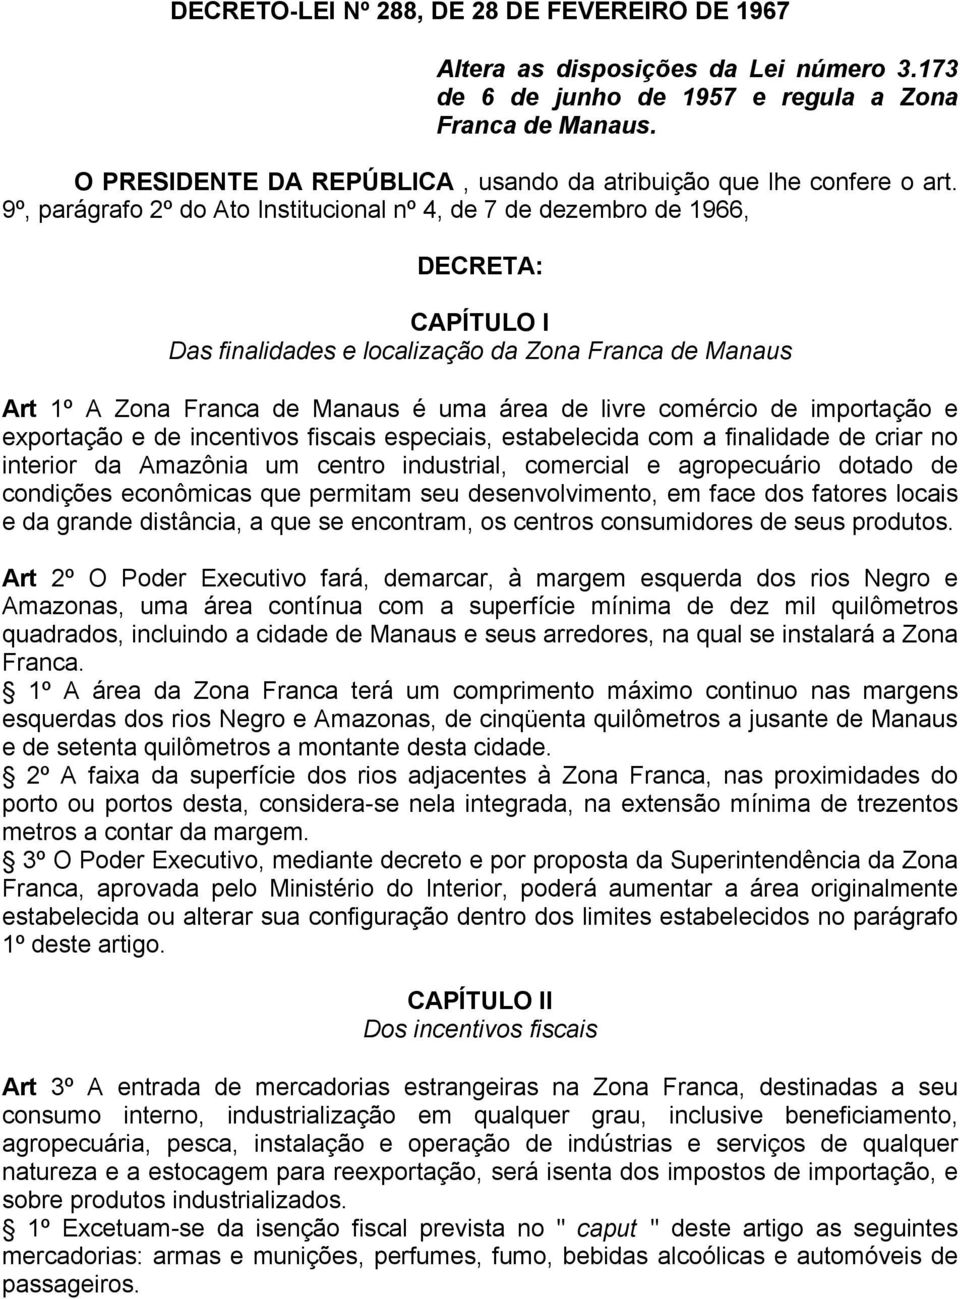 9º, parágrafo 2º do Ato Institucional nº 4, de 7 de dezembro de 1966, DECRETA: CAPÍTULO I Das finalidades e localização da Zona Franca de Manaus Art 1º A Zona Franca de Manaus é uma área de livre